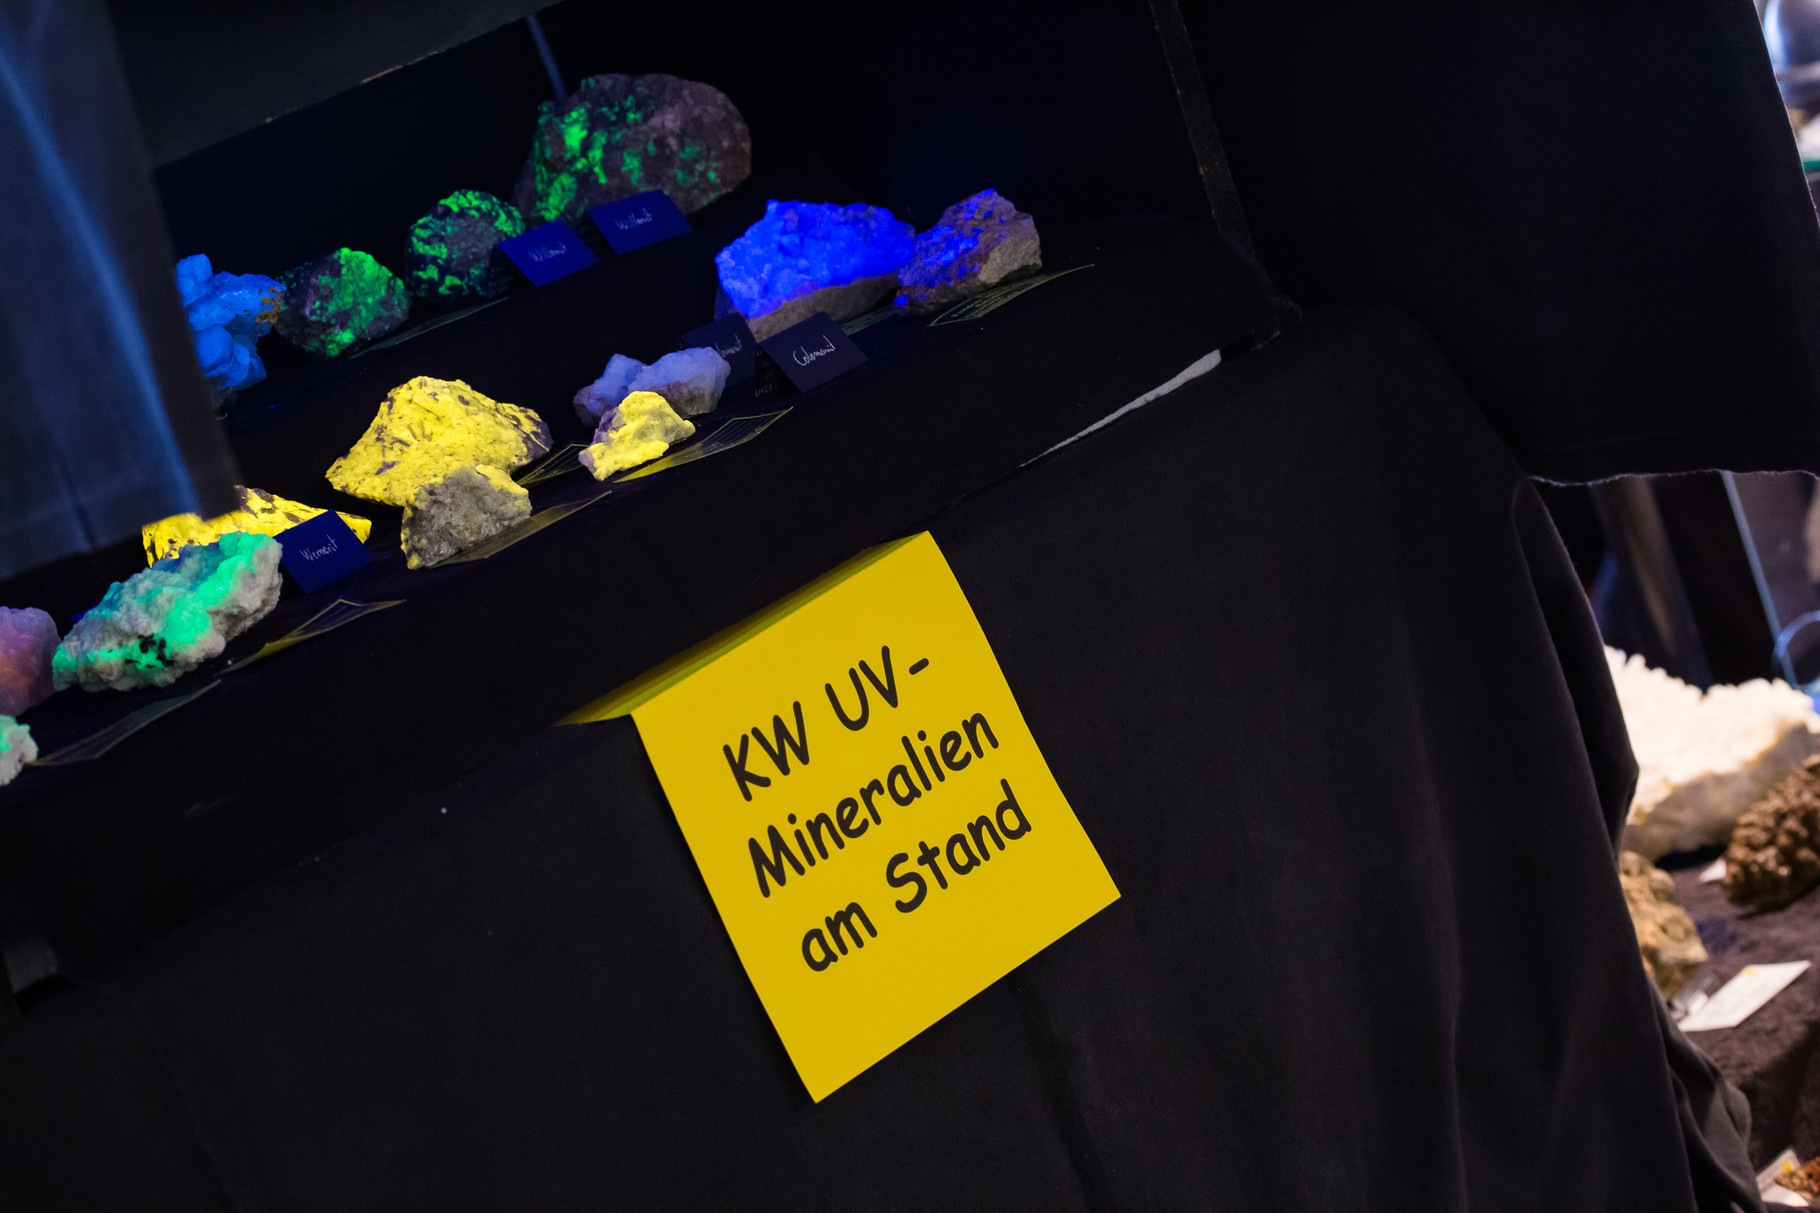 Mineralien die unter UV-Licht fluoreszieren